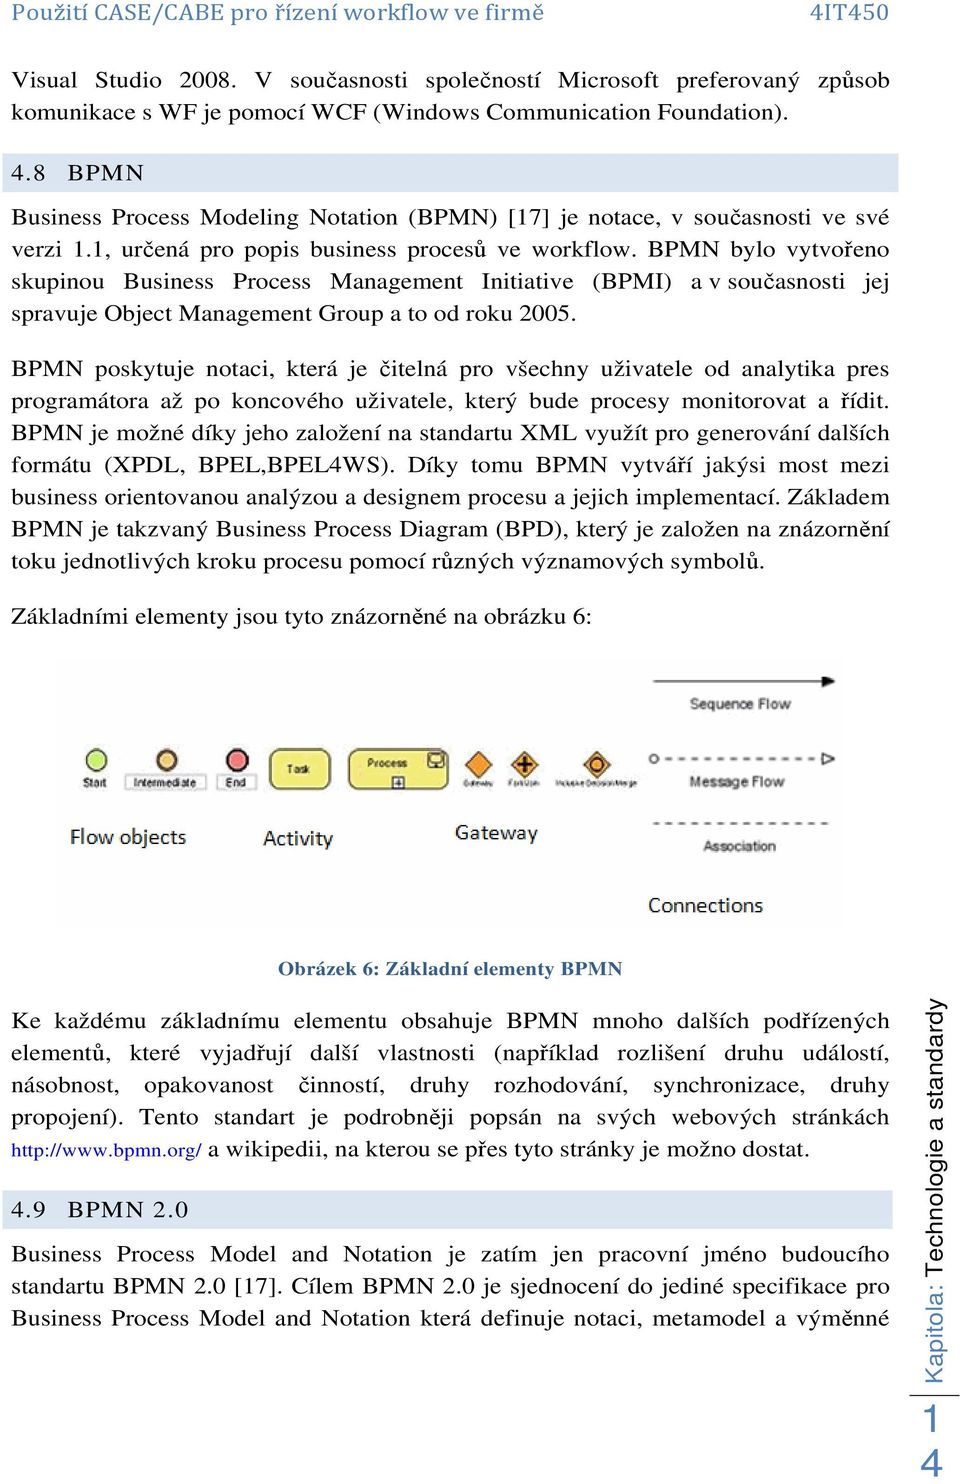 BPMN bylo vytvořeno skupinou Business Process Management Initiative (BPMI) a v současnosti jej spravuje Object Management Group a to od roku 2005.